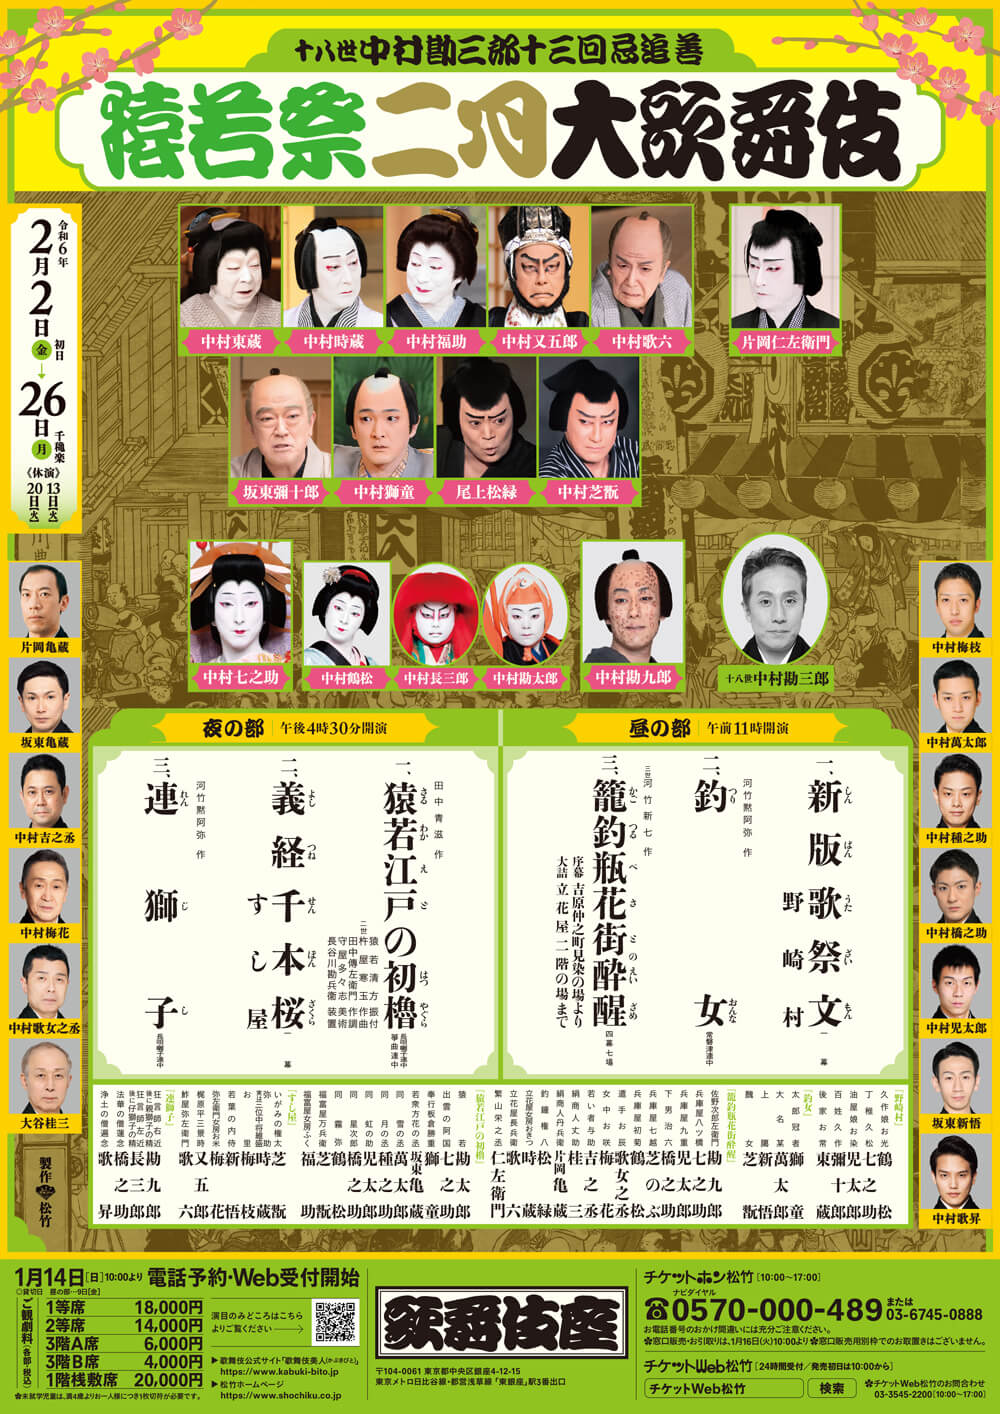 歌舞伎座「猿若祭二月大歌舞伎」一番太鼓の儀のお知らせ